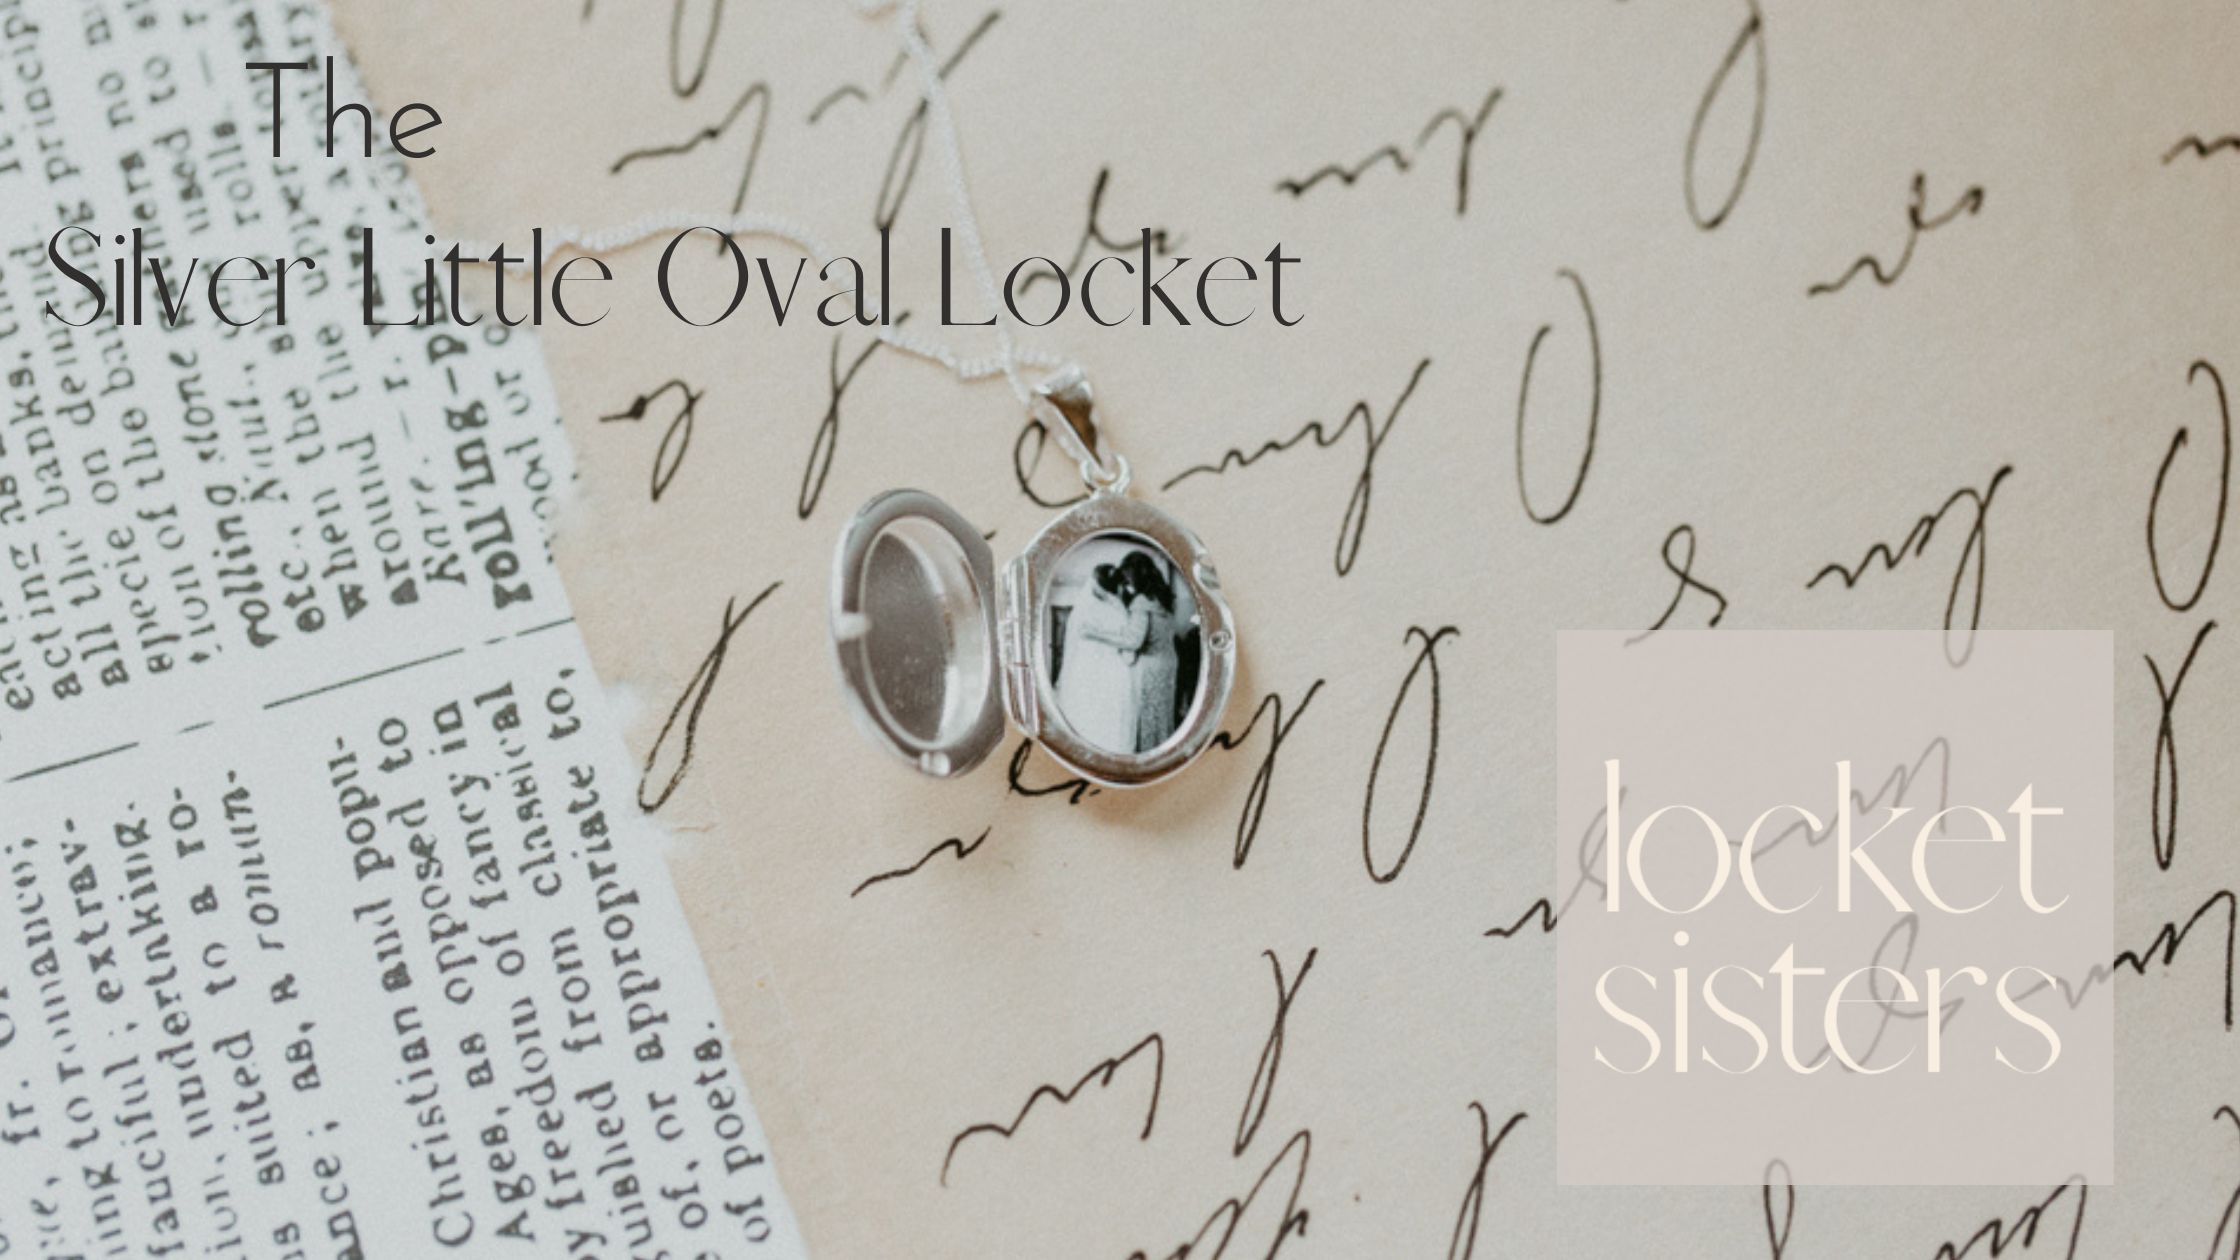 The Silver Little Oval Locket